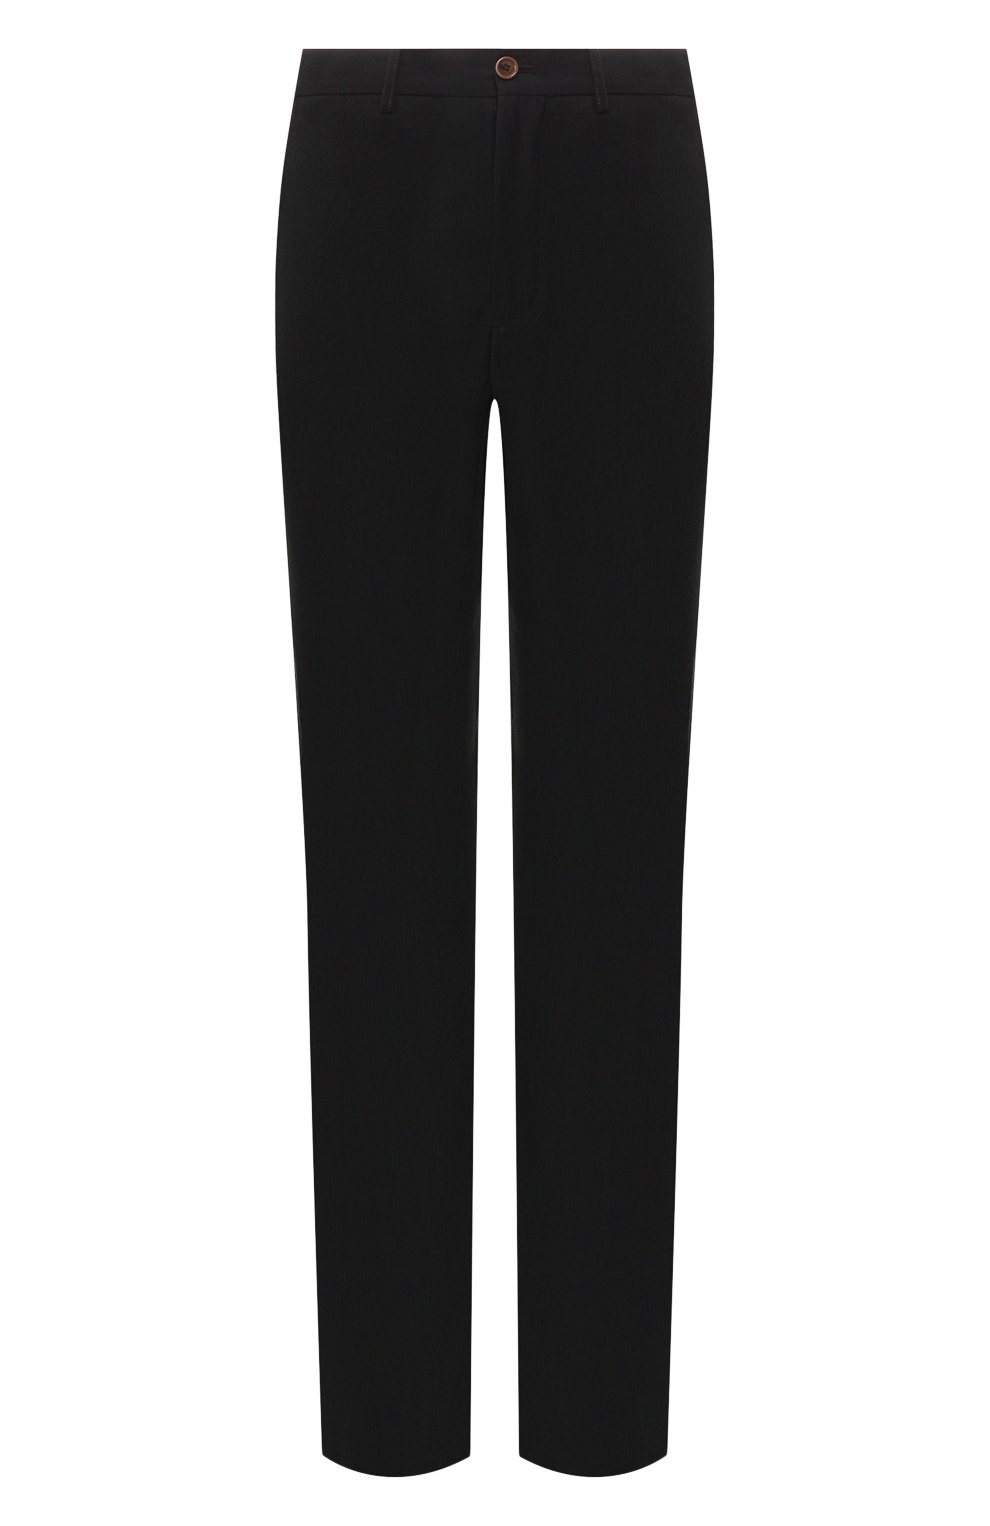 Мужские брюки из вискозы GIORGIO ARMANI черного цвета, арт. 9SGPP06G/T00AB | Фото 1 (Случай: Повседневный; Материал внешний: Вискоза)